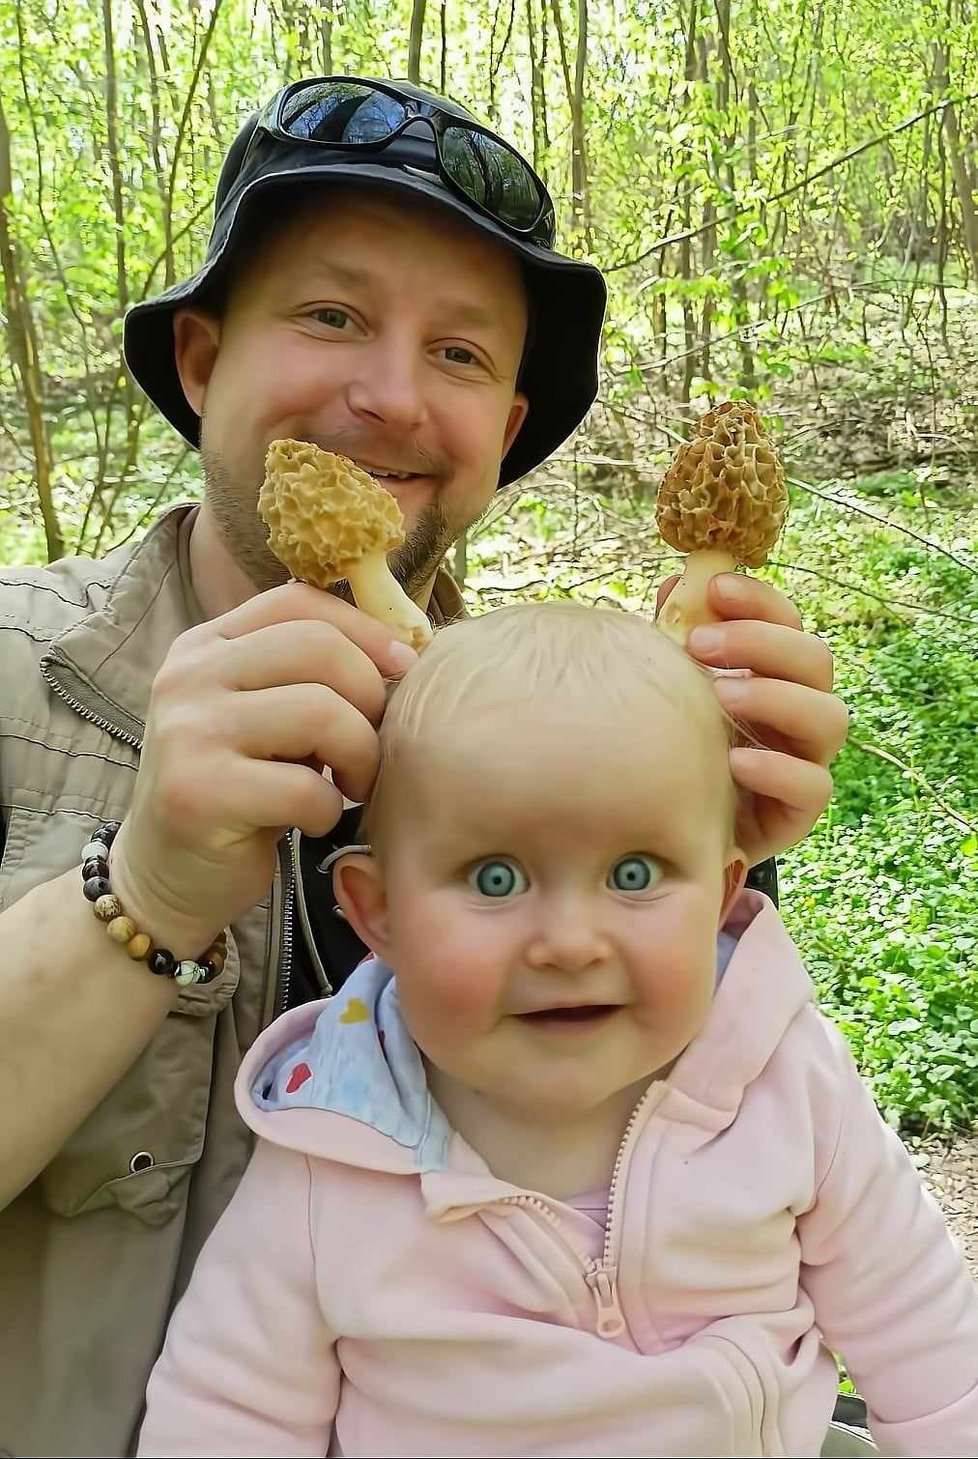 Fotograf Jan Hodač vyráží do lese i se svou roční dcerou.